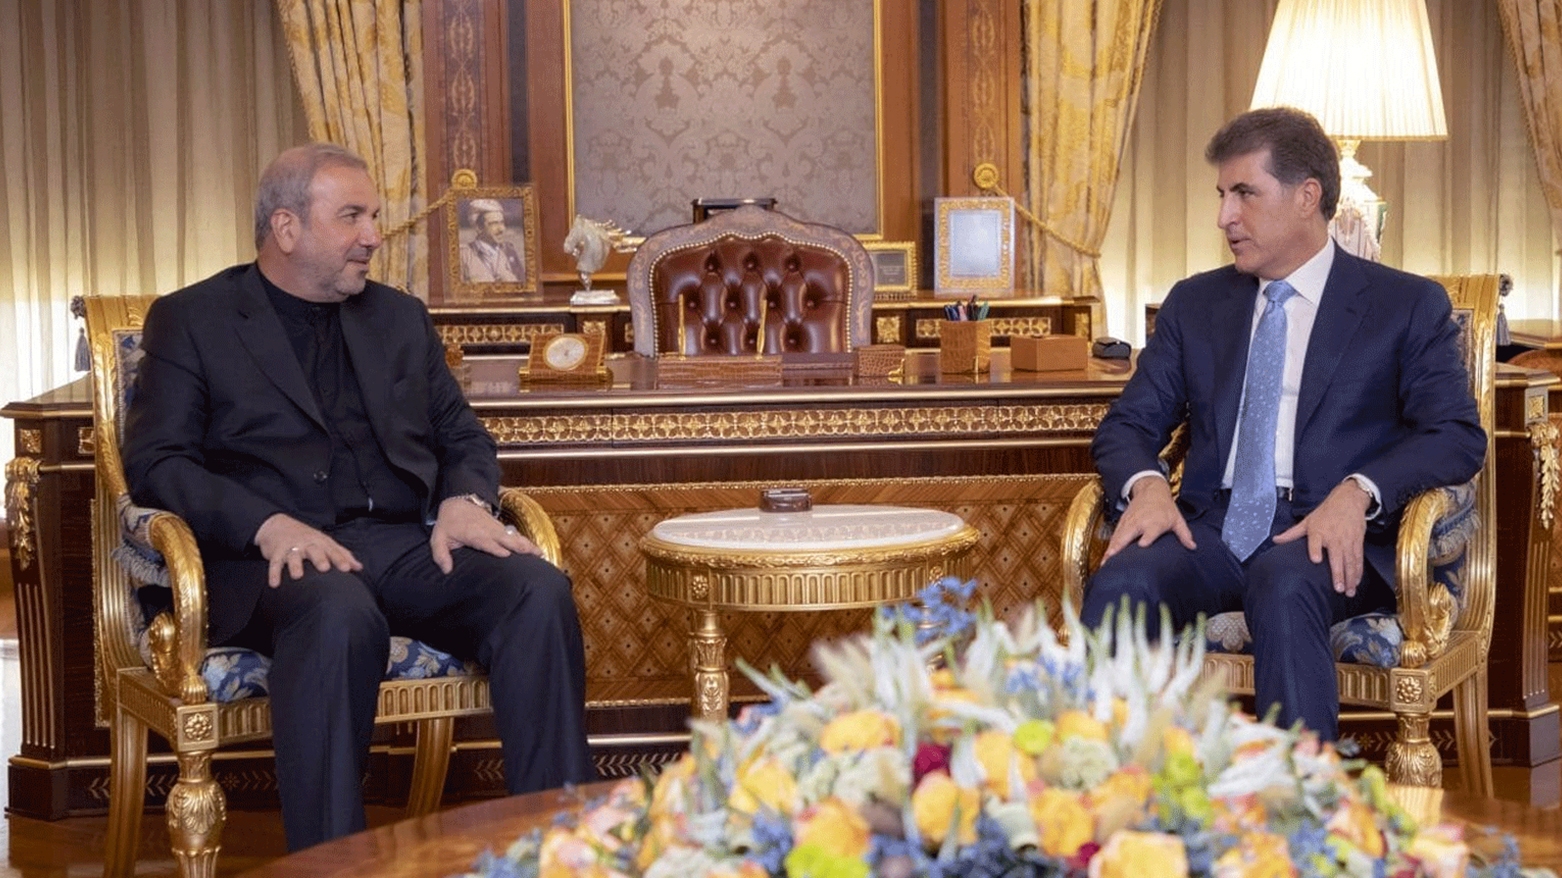 رئيس إقليم كوردستان يستقبل السفير الإيراني لدى العراق